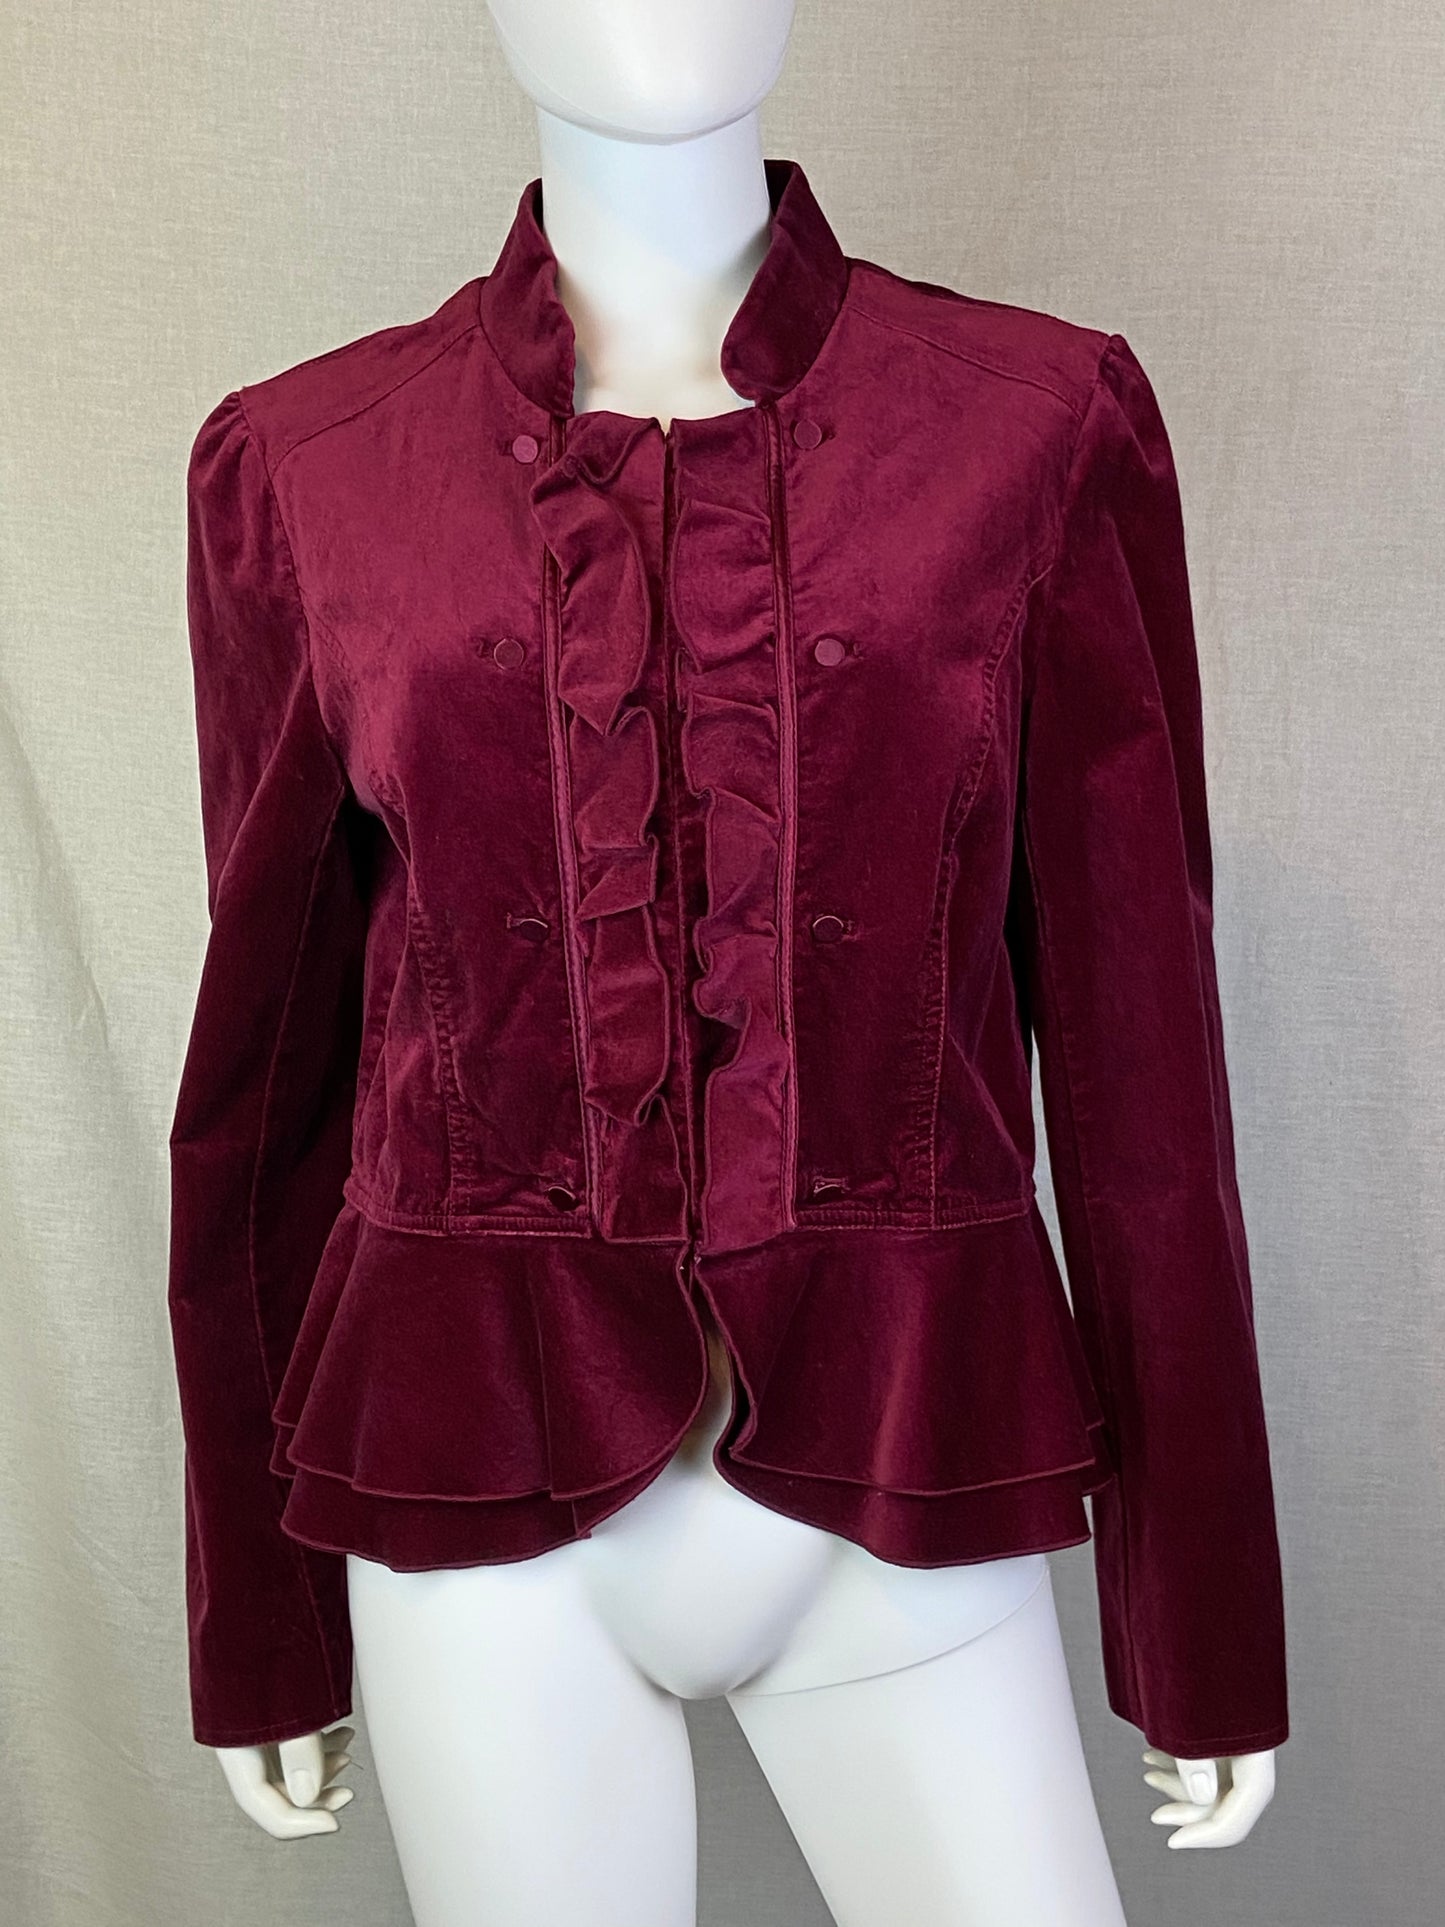 White House Black Market Burgundy Red Velvet Victorian Jacket